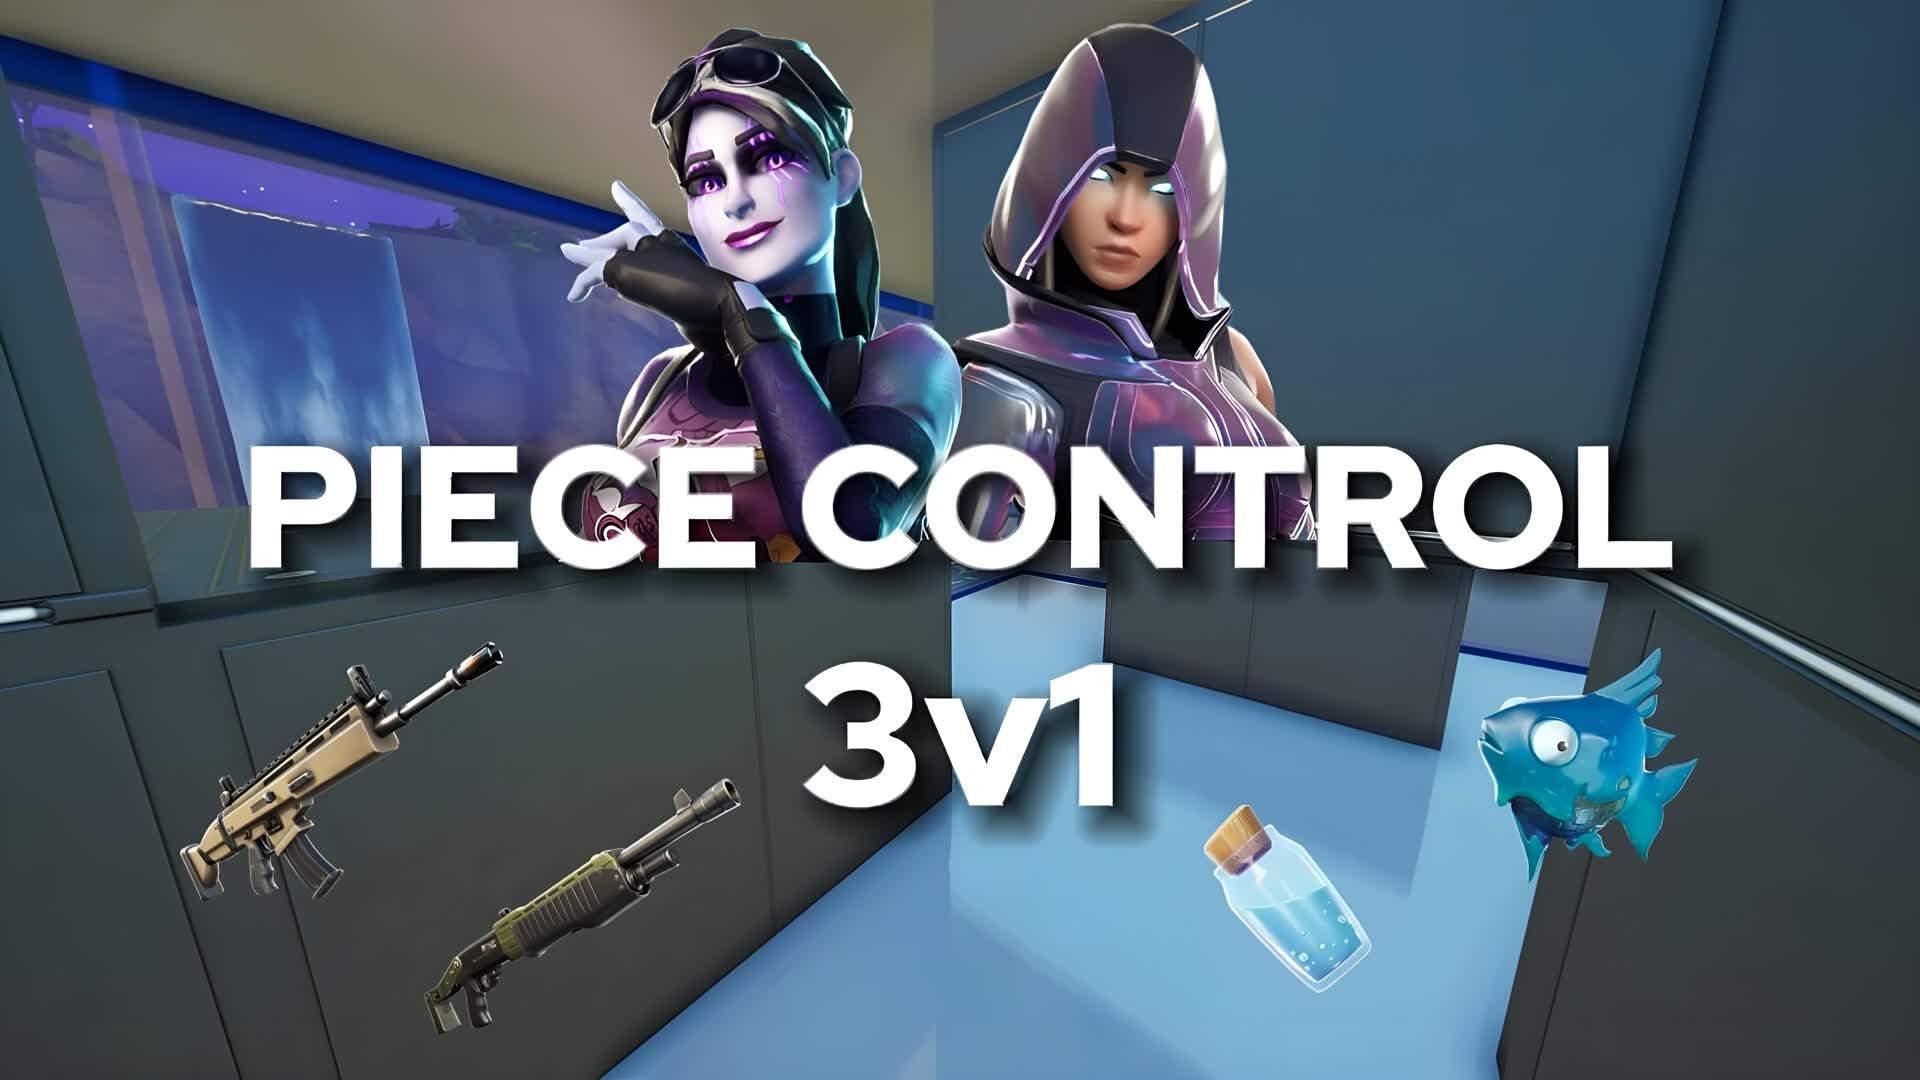 PIECE CONTROL 3V1